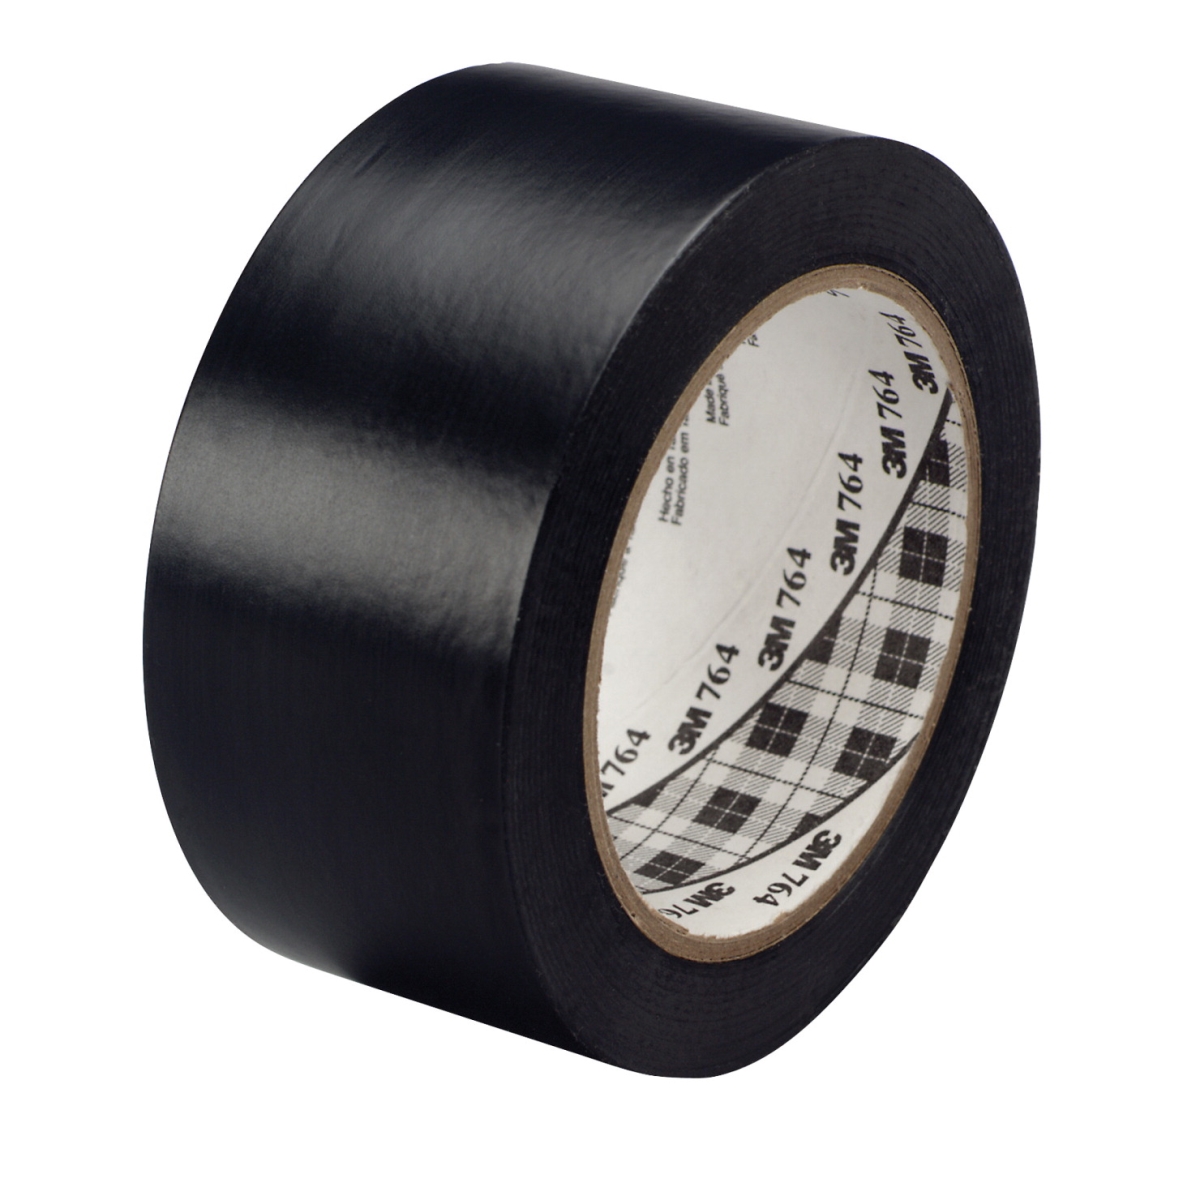 General Purpose Wear Resistant Floor Marking Tape Roll, 2 In. X 36 Yard, Vinyl - Black